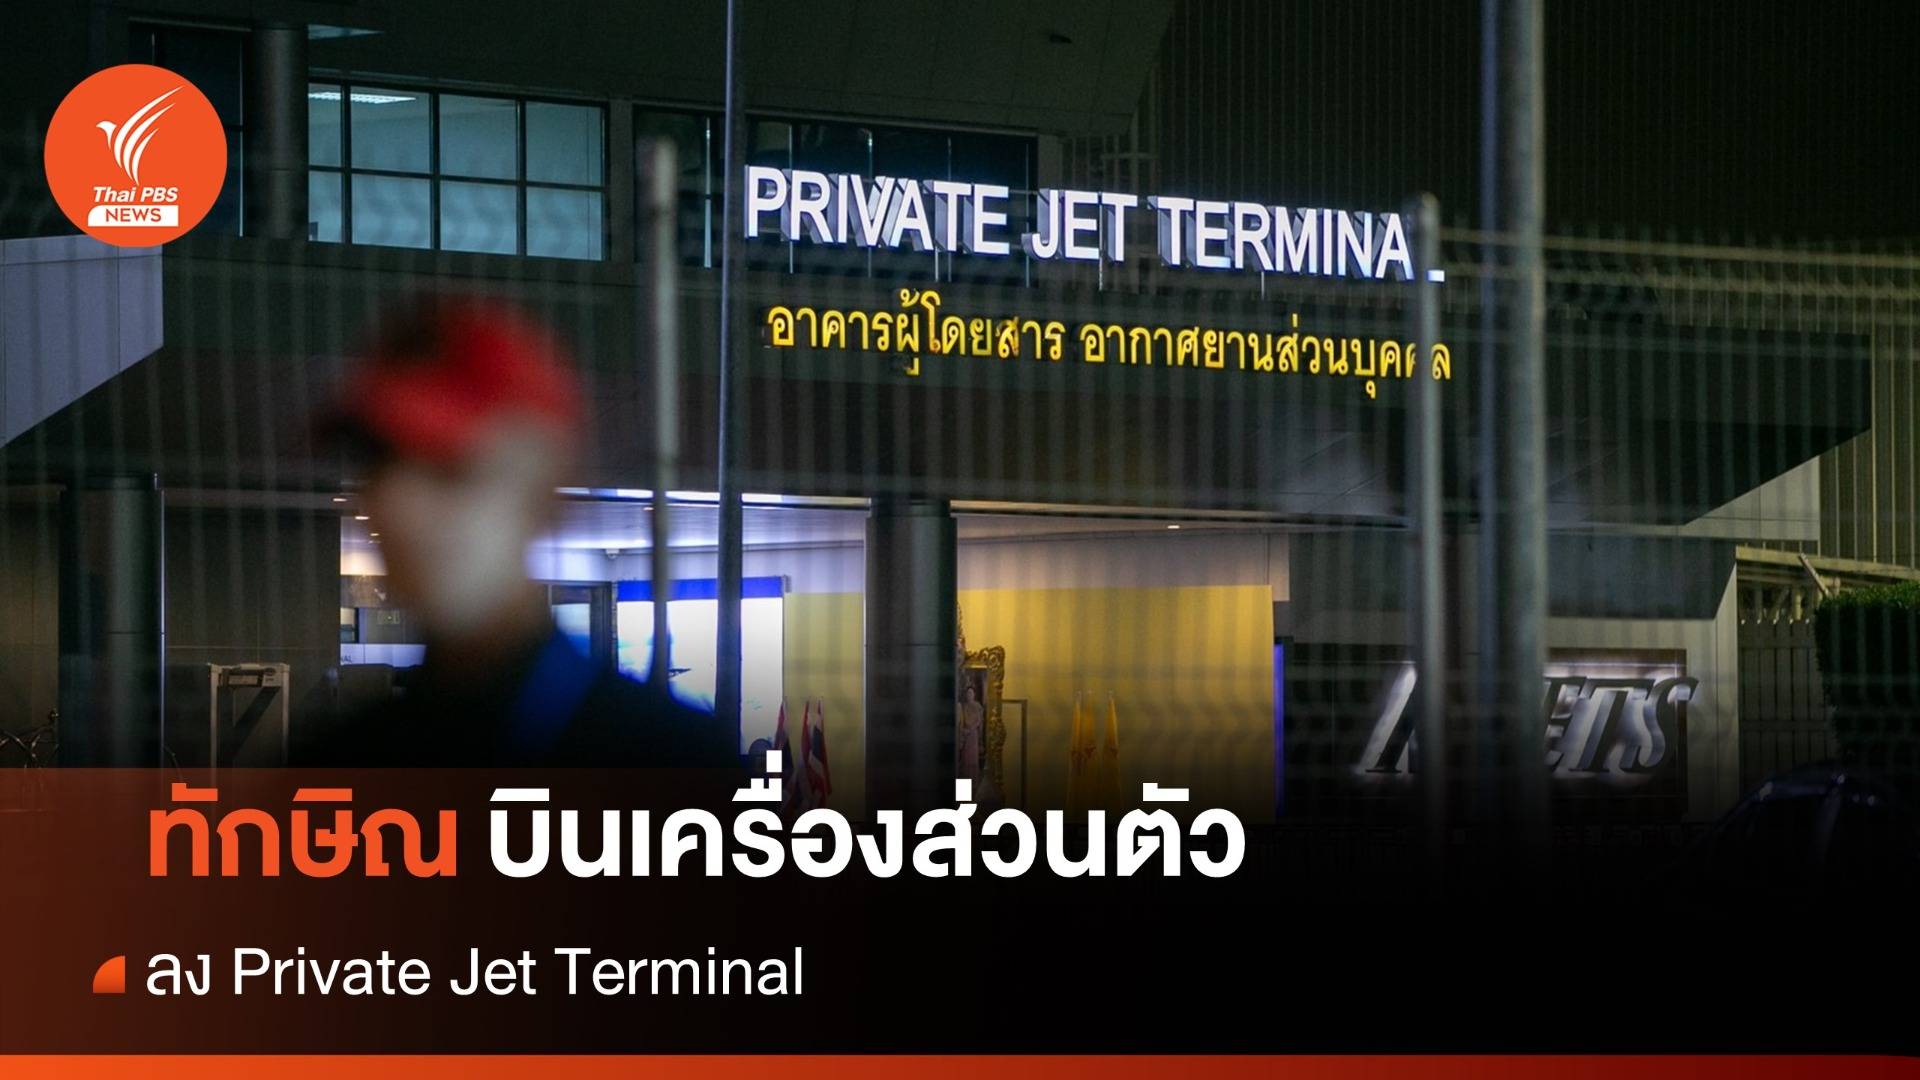 ทักษิณกลับไทย  : "ทักษิณ" บินเครื่องส่วนตัว ลง Private Jet Terminal 